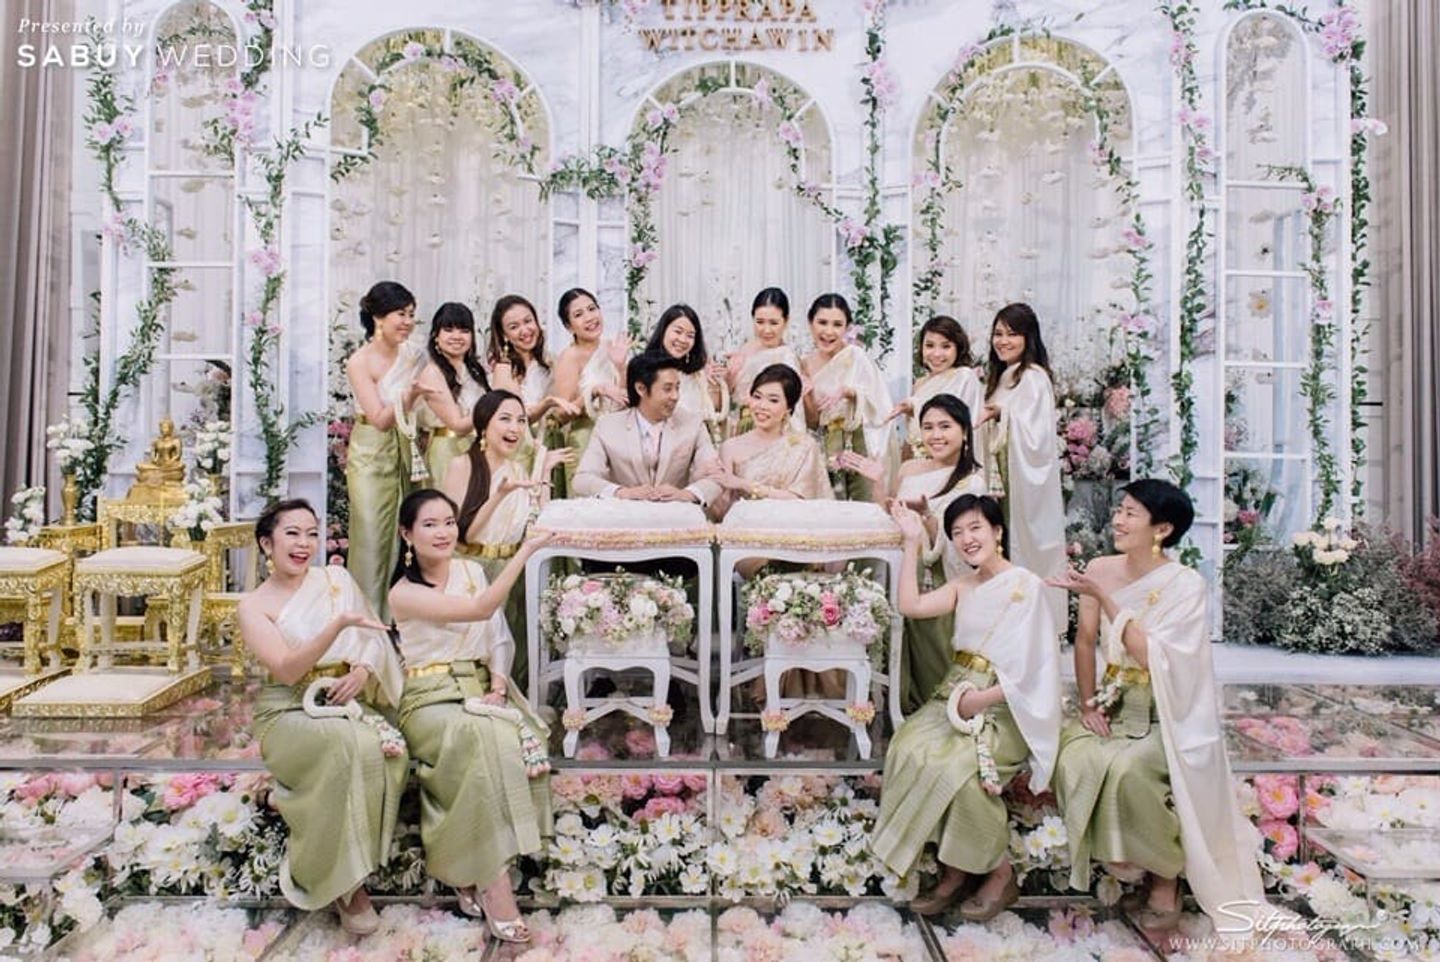 พิธีหมั้น,งานหมั้น,ชุดหมั้น,จัดดอกไม้งานแต่ง,ตกแต่งงานแต่ง รีวิวงานแต่ง 4 มิติยุคใหม่ ส่งผ่านความรู้สึก ครบทุกประสาทสัมผัส @Plaza Athénée Bangkok